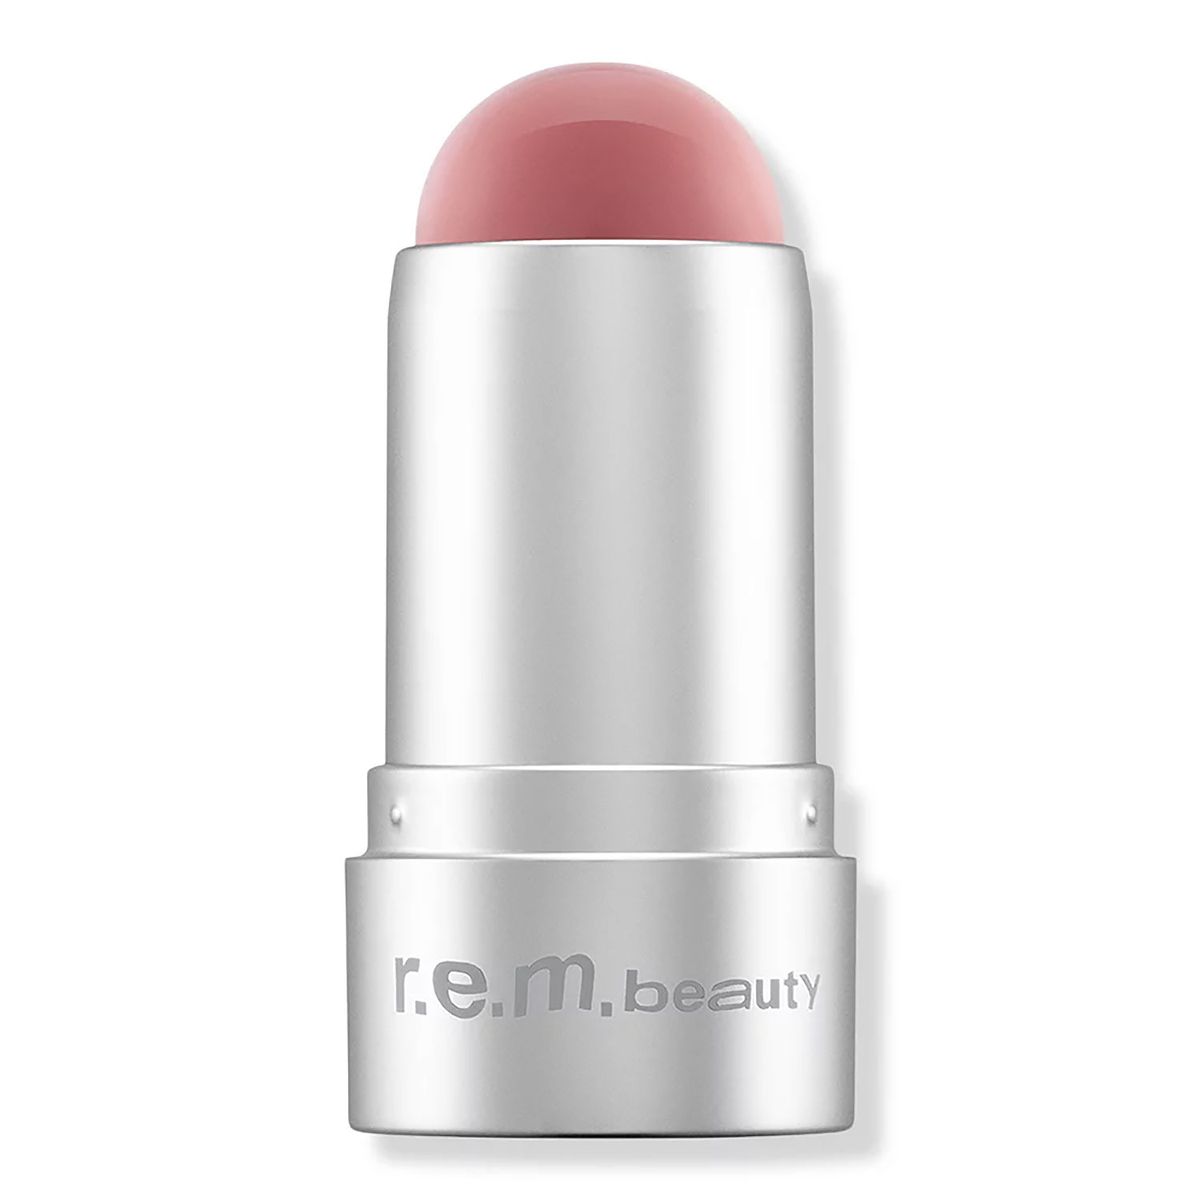 R.E.M. Beauty